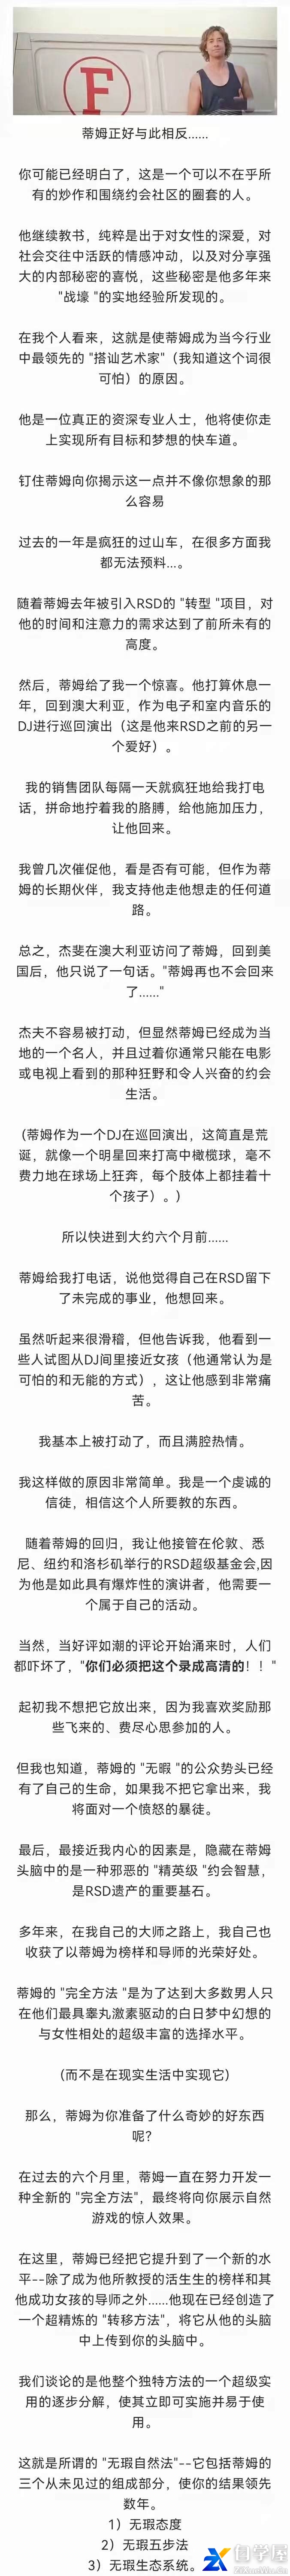 RSD社交力学蒂姆《无暇自然》中文字幕版2.jpg